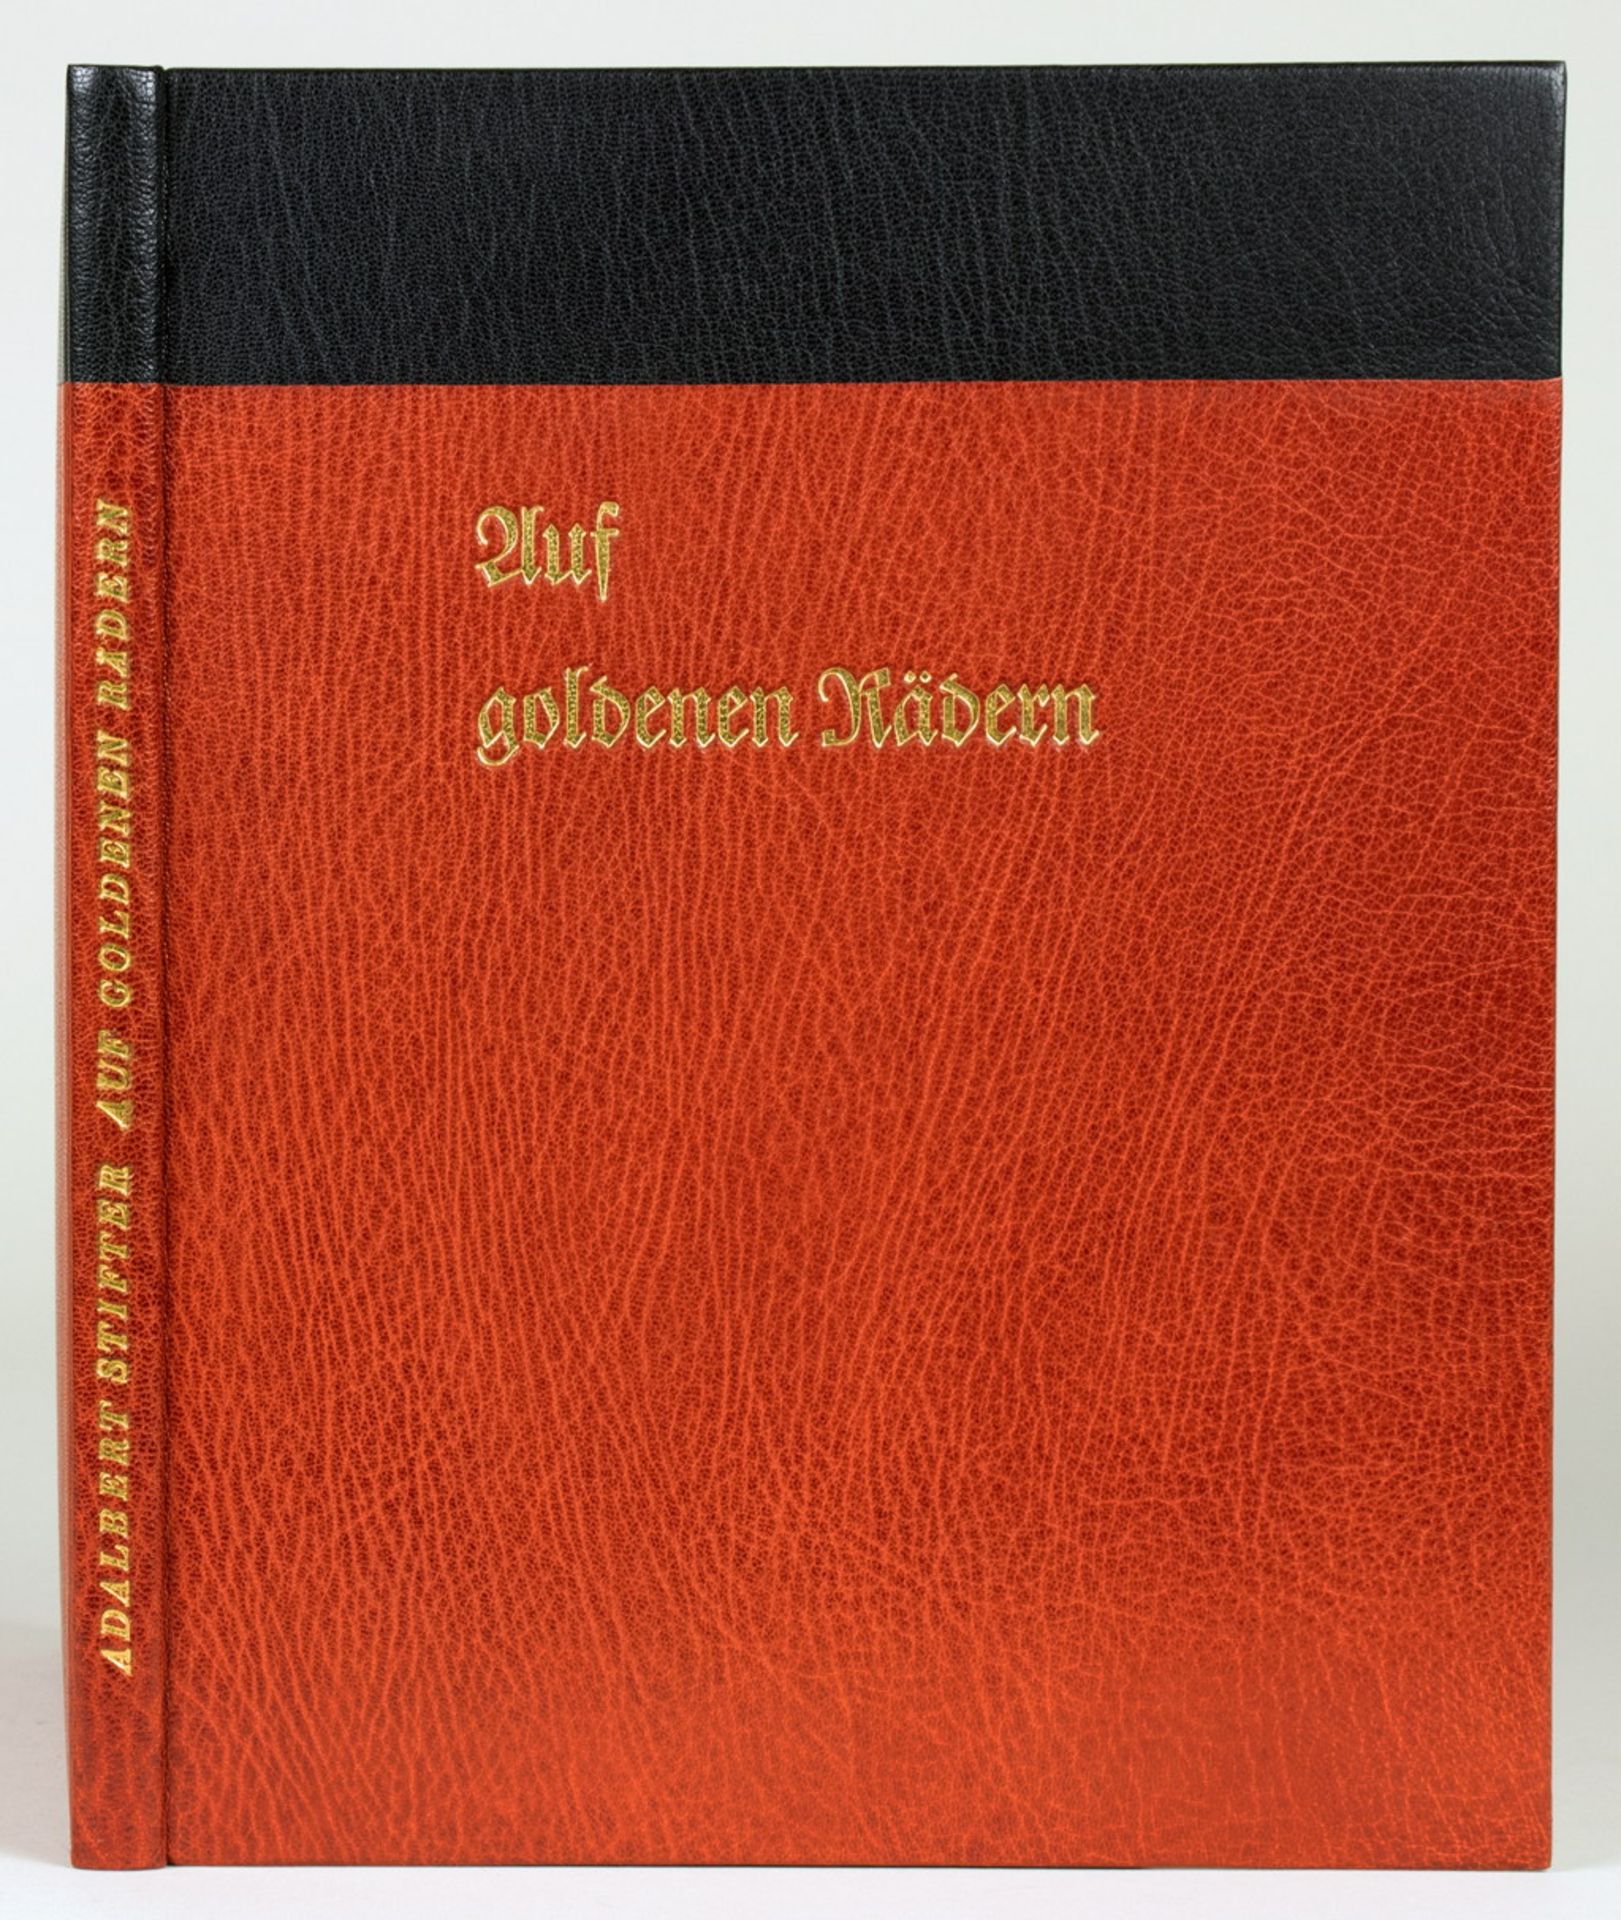 Rostrot-schwarzer Maroquinband (Hans Rudolf Billeter). 1963